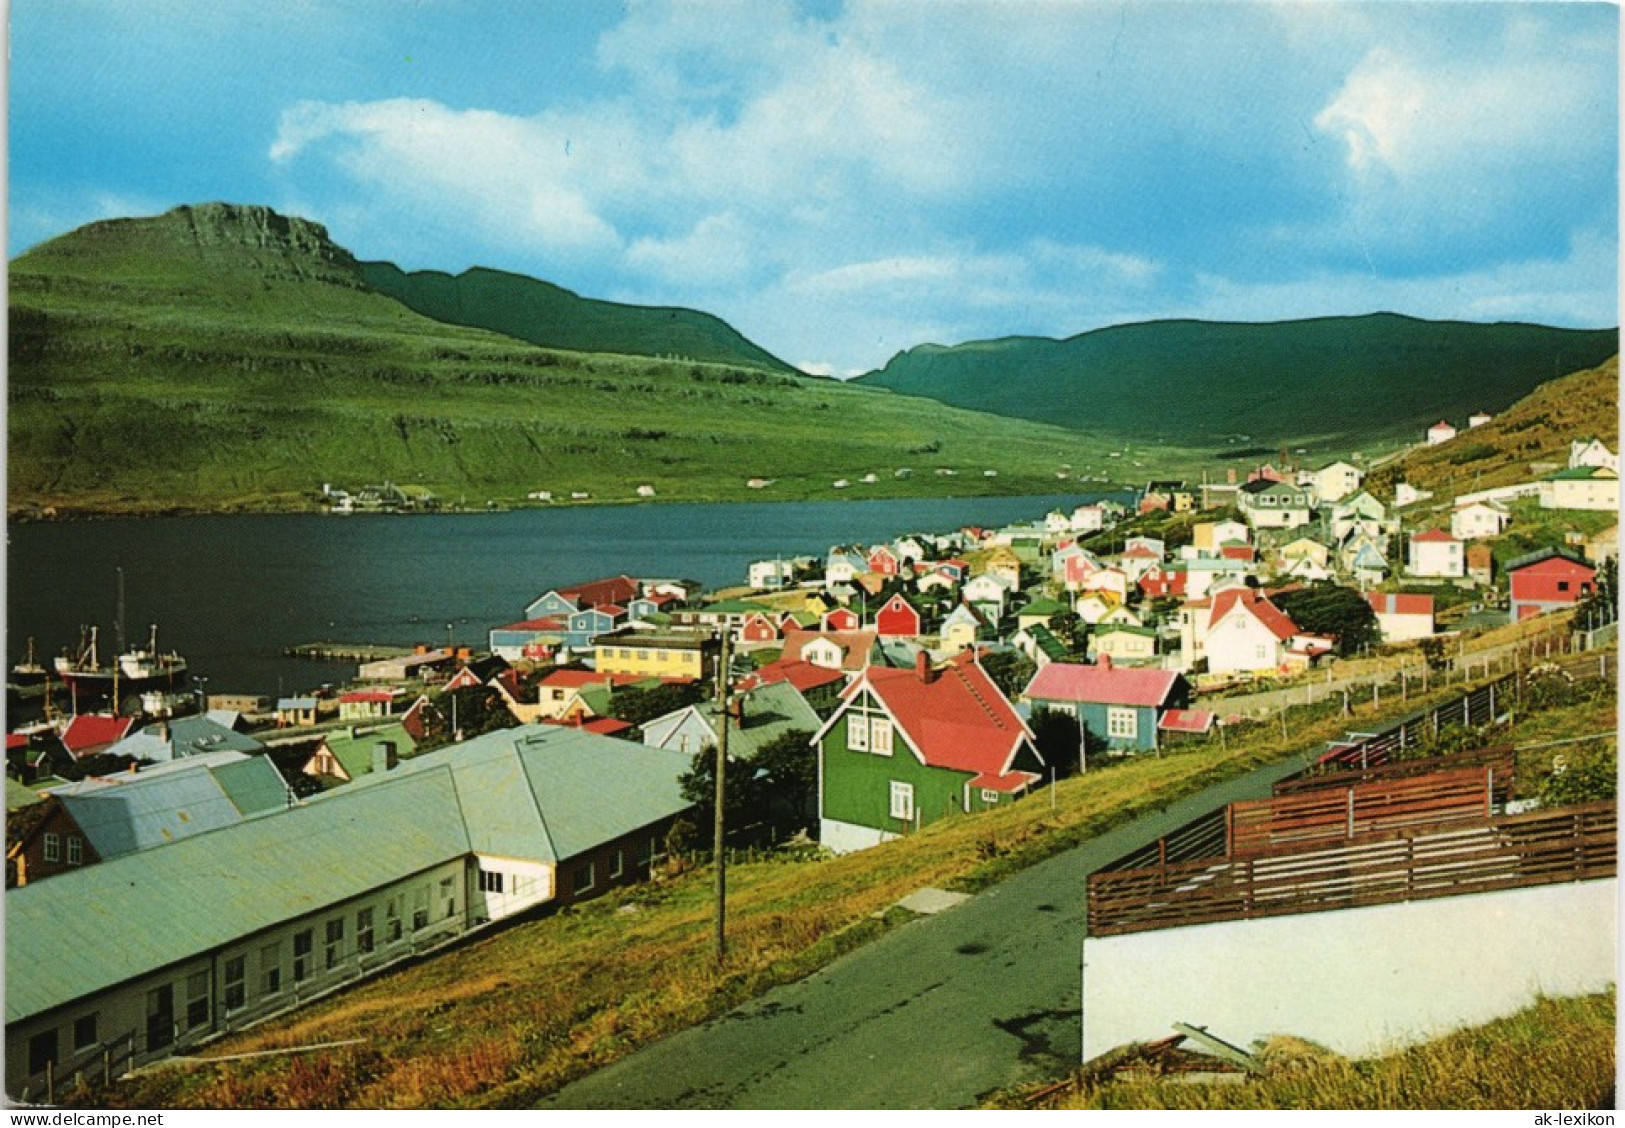 Postcard Tvøroyri Tverå Oyrnafjall Suðuroy Faroe Islands 1975 - Färöer